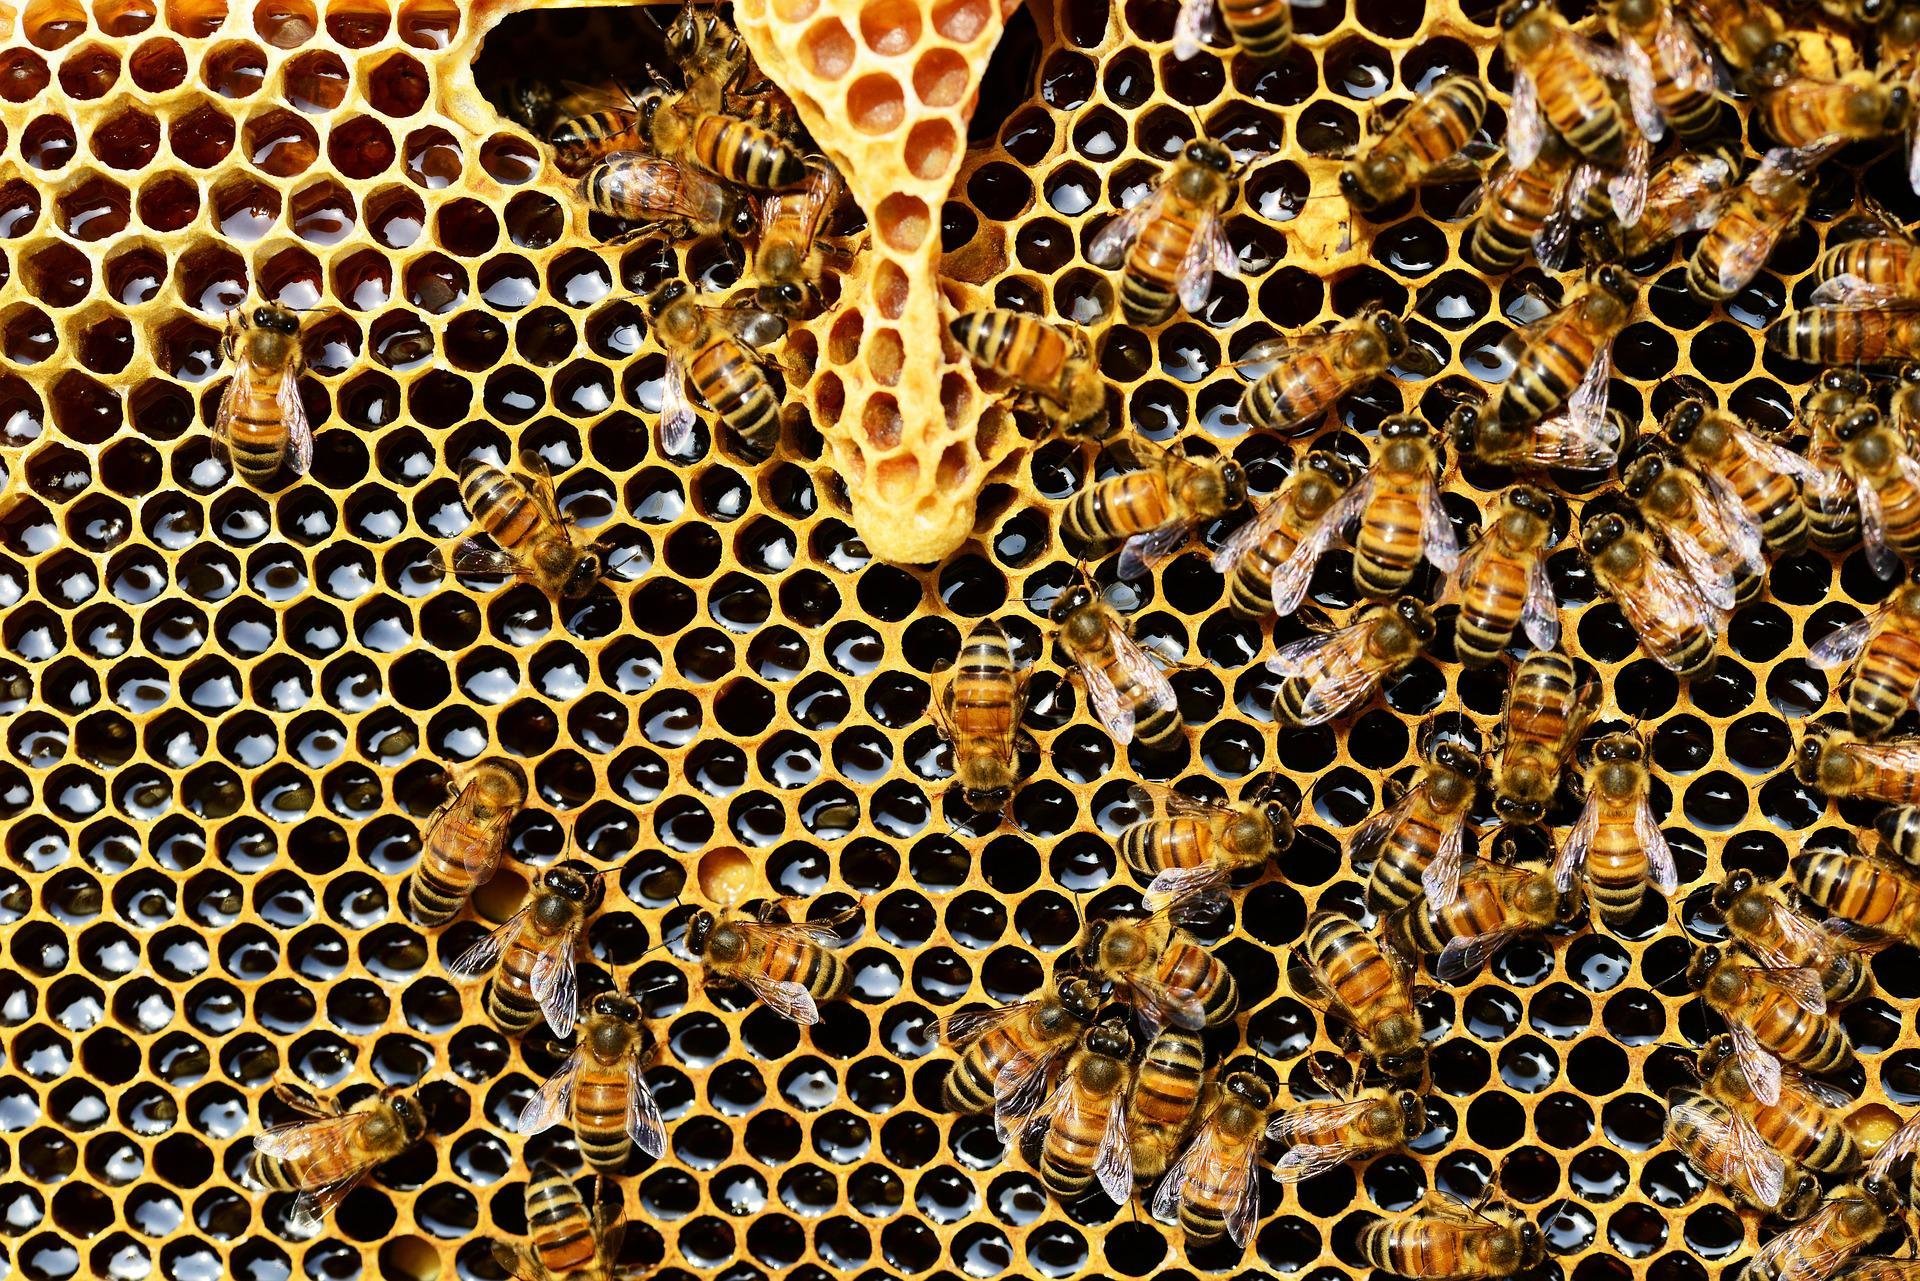  Bitės. Pixabay nuotr.